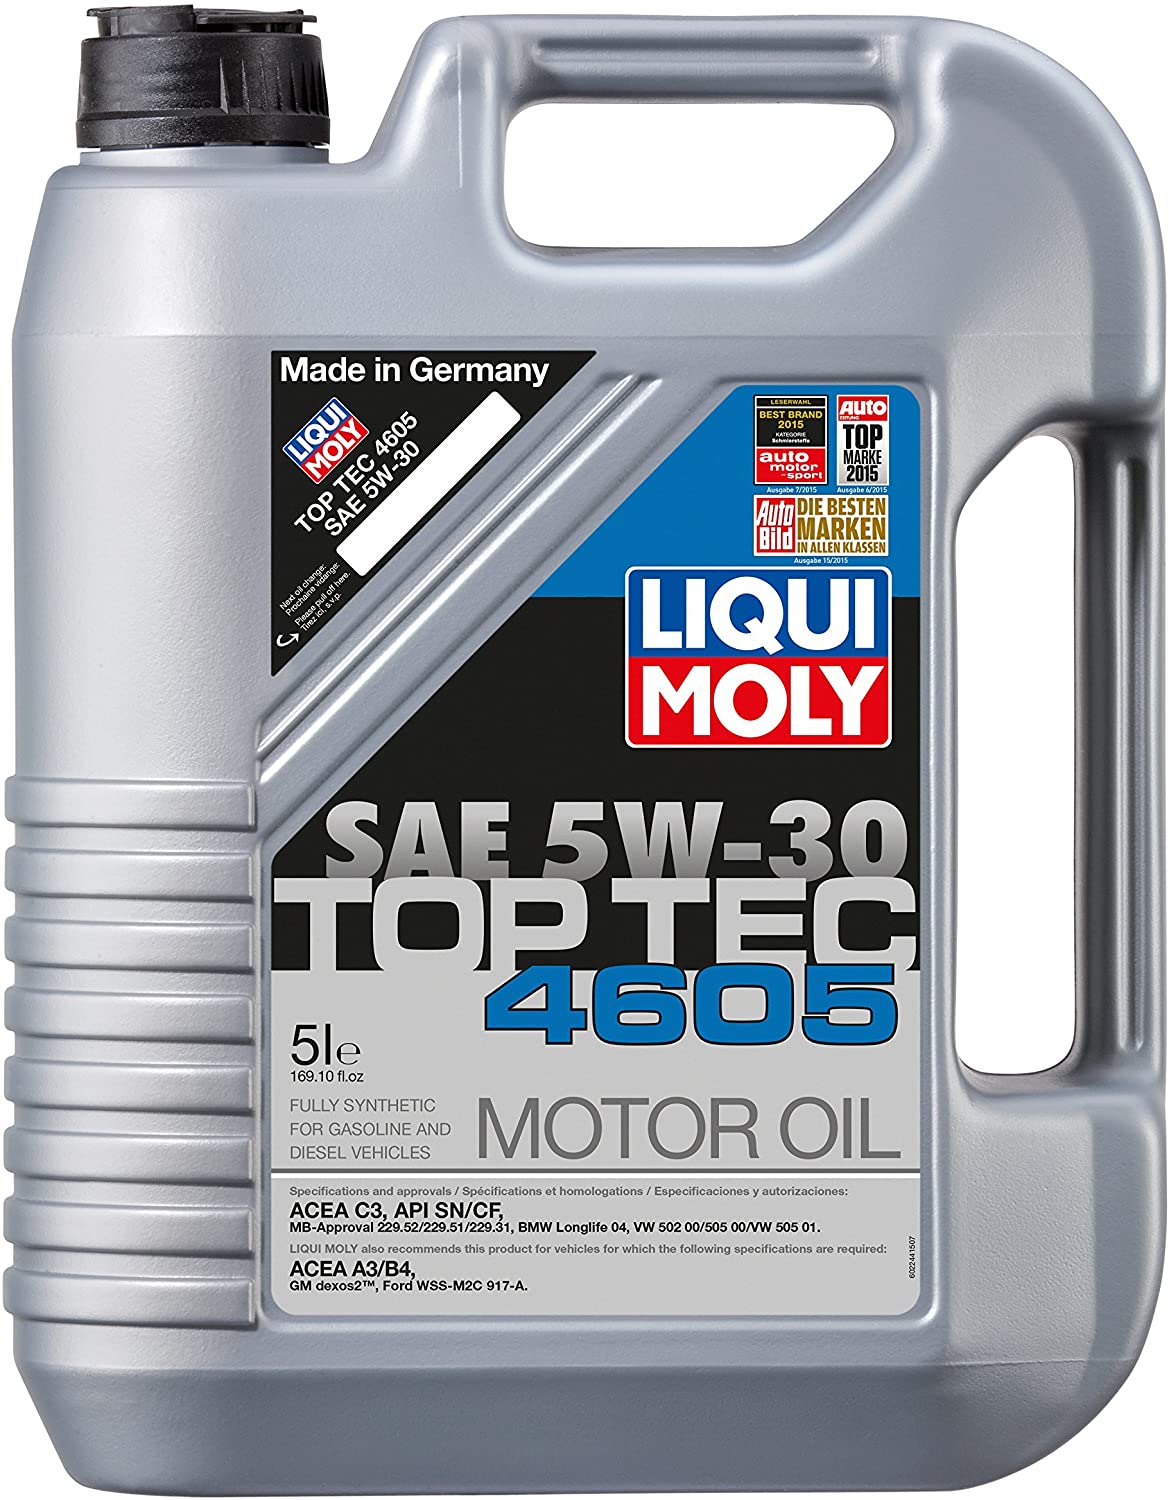 Liqui Moly 5L Top Tec 4605 Motor Oil 5W-30